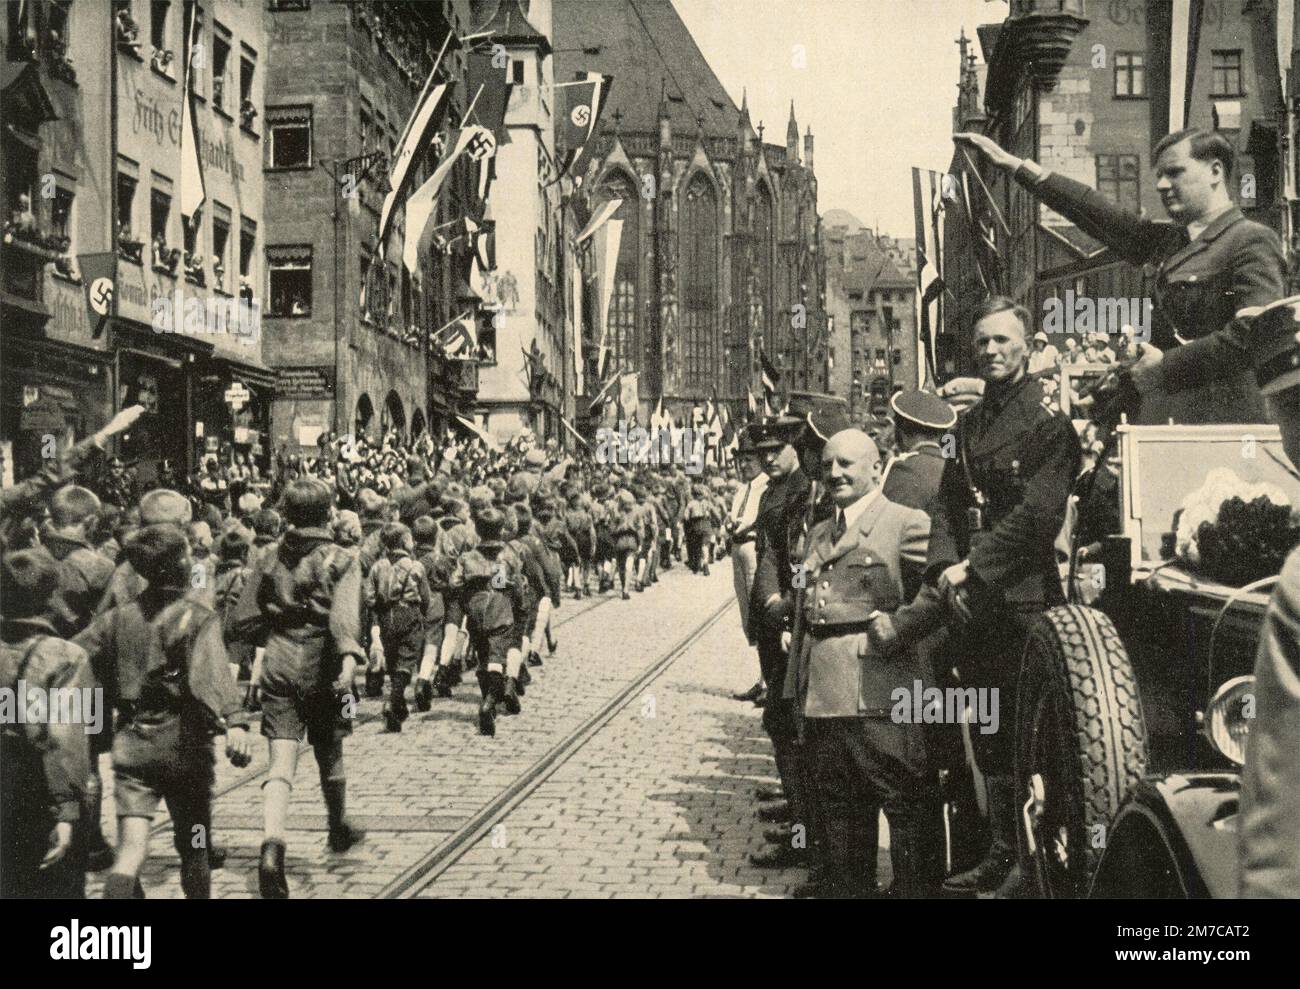 Hitlerjugend les enfants marchent à Nurberg, Allemagne 1933 Banque D'Images